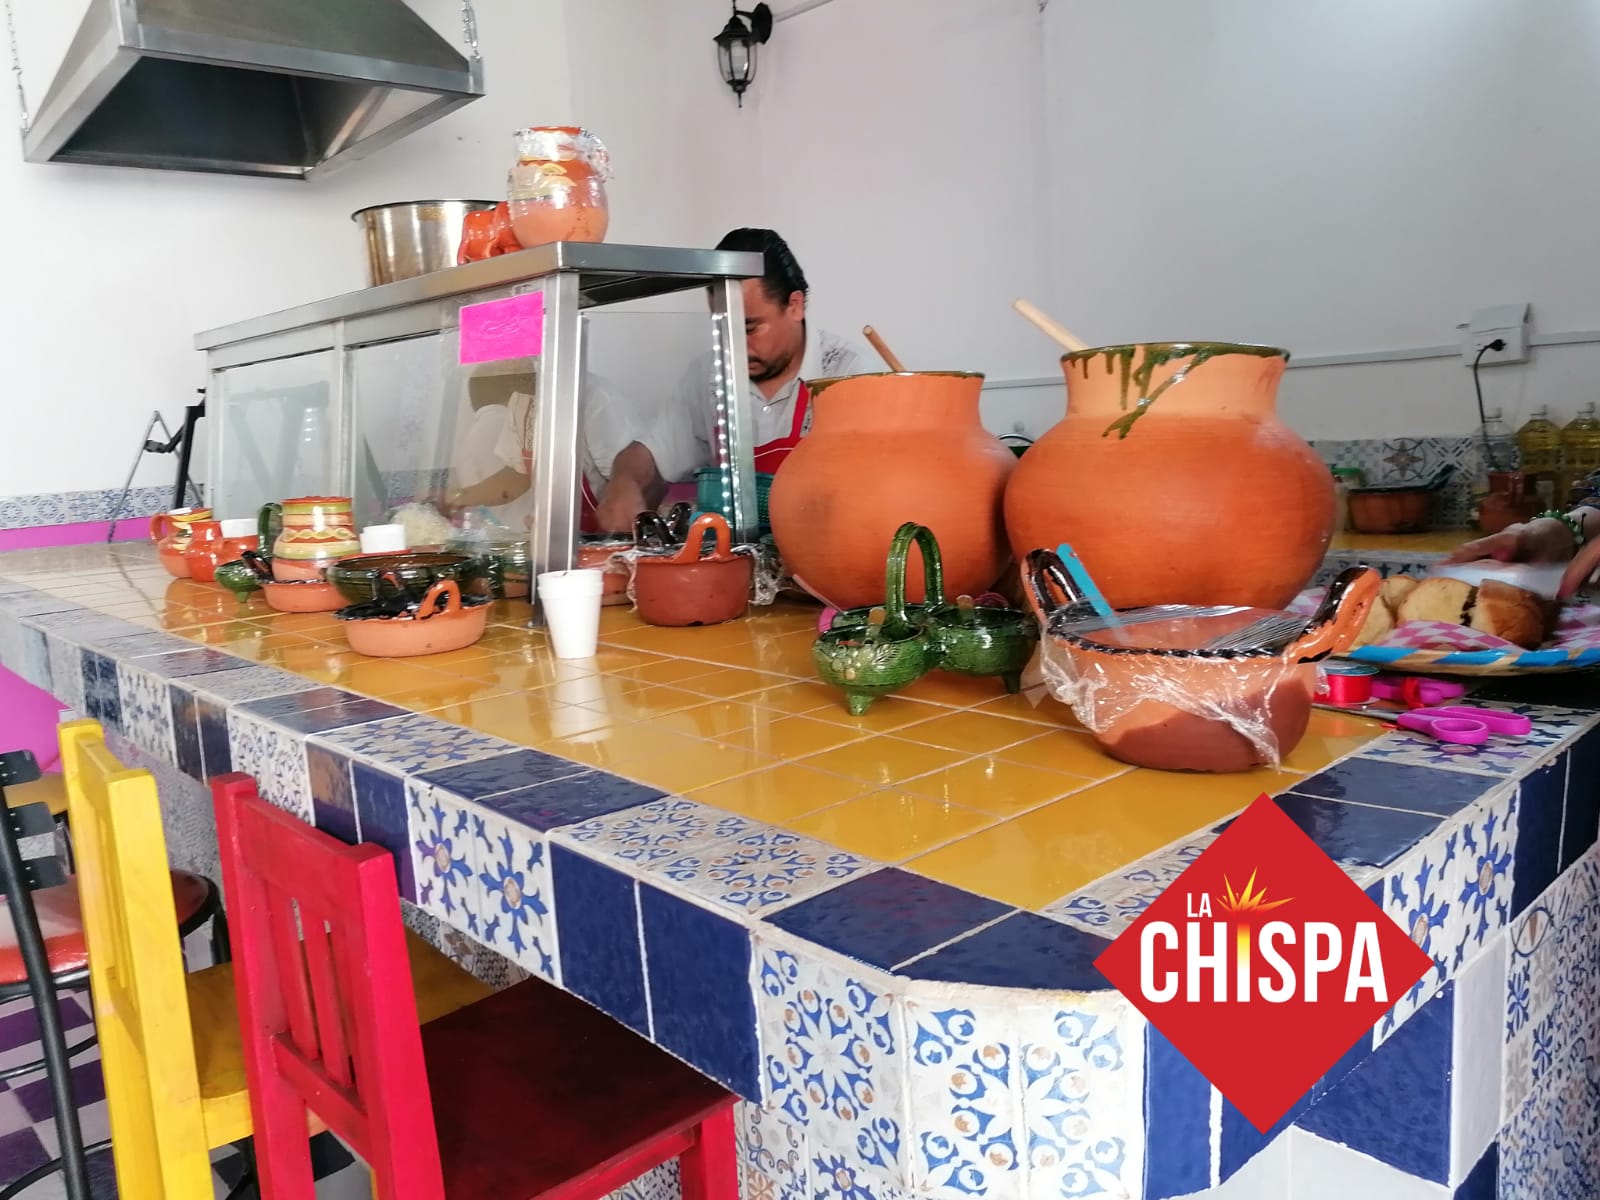 calidad en los productos que son herencia de los saberes y experiencias propias de la cultura gastronómica de ese estado del Istmo de Tehuantepec